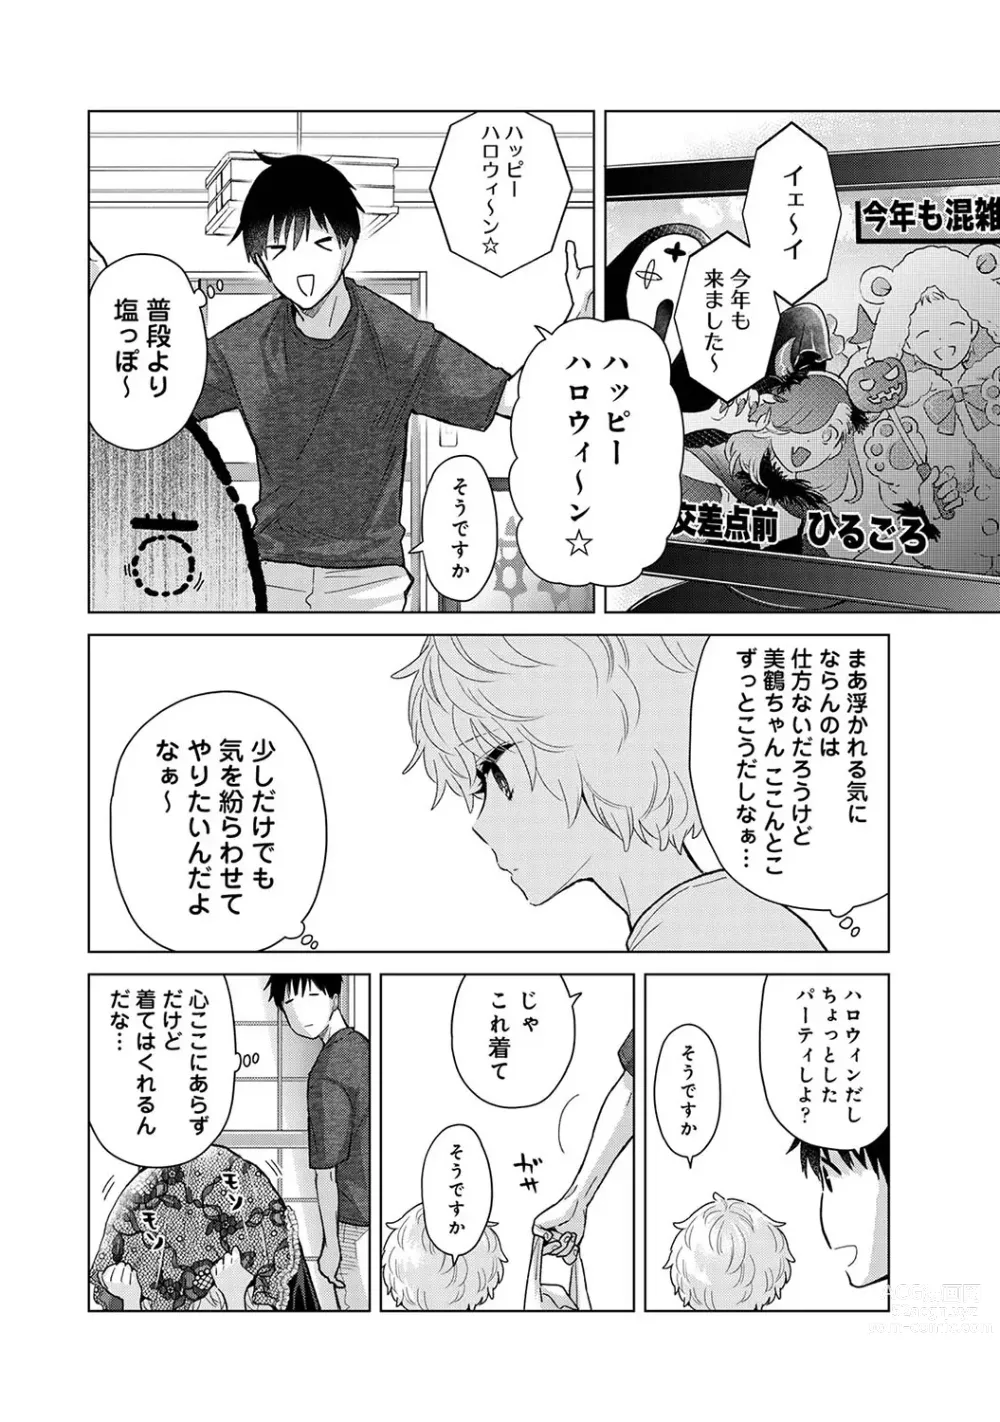 Page 10 of manga COMIC Ananga Ranga Vol. 100